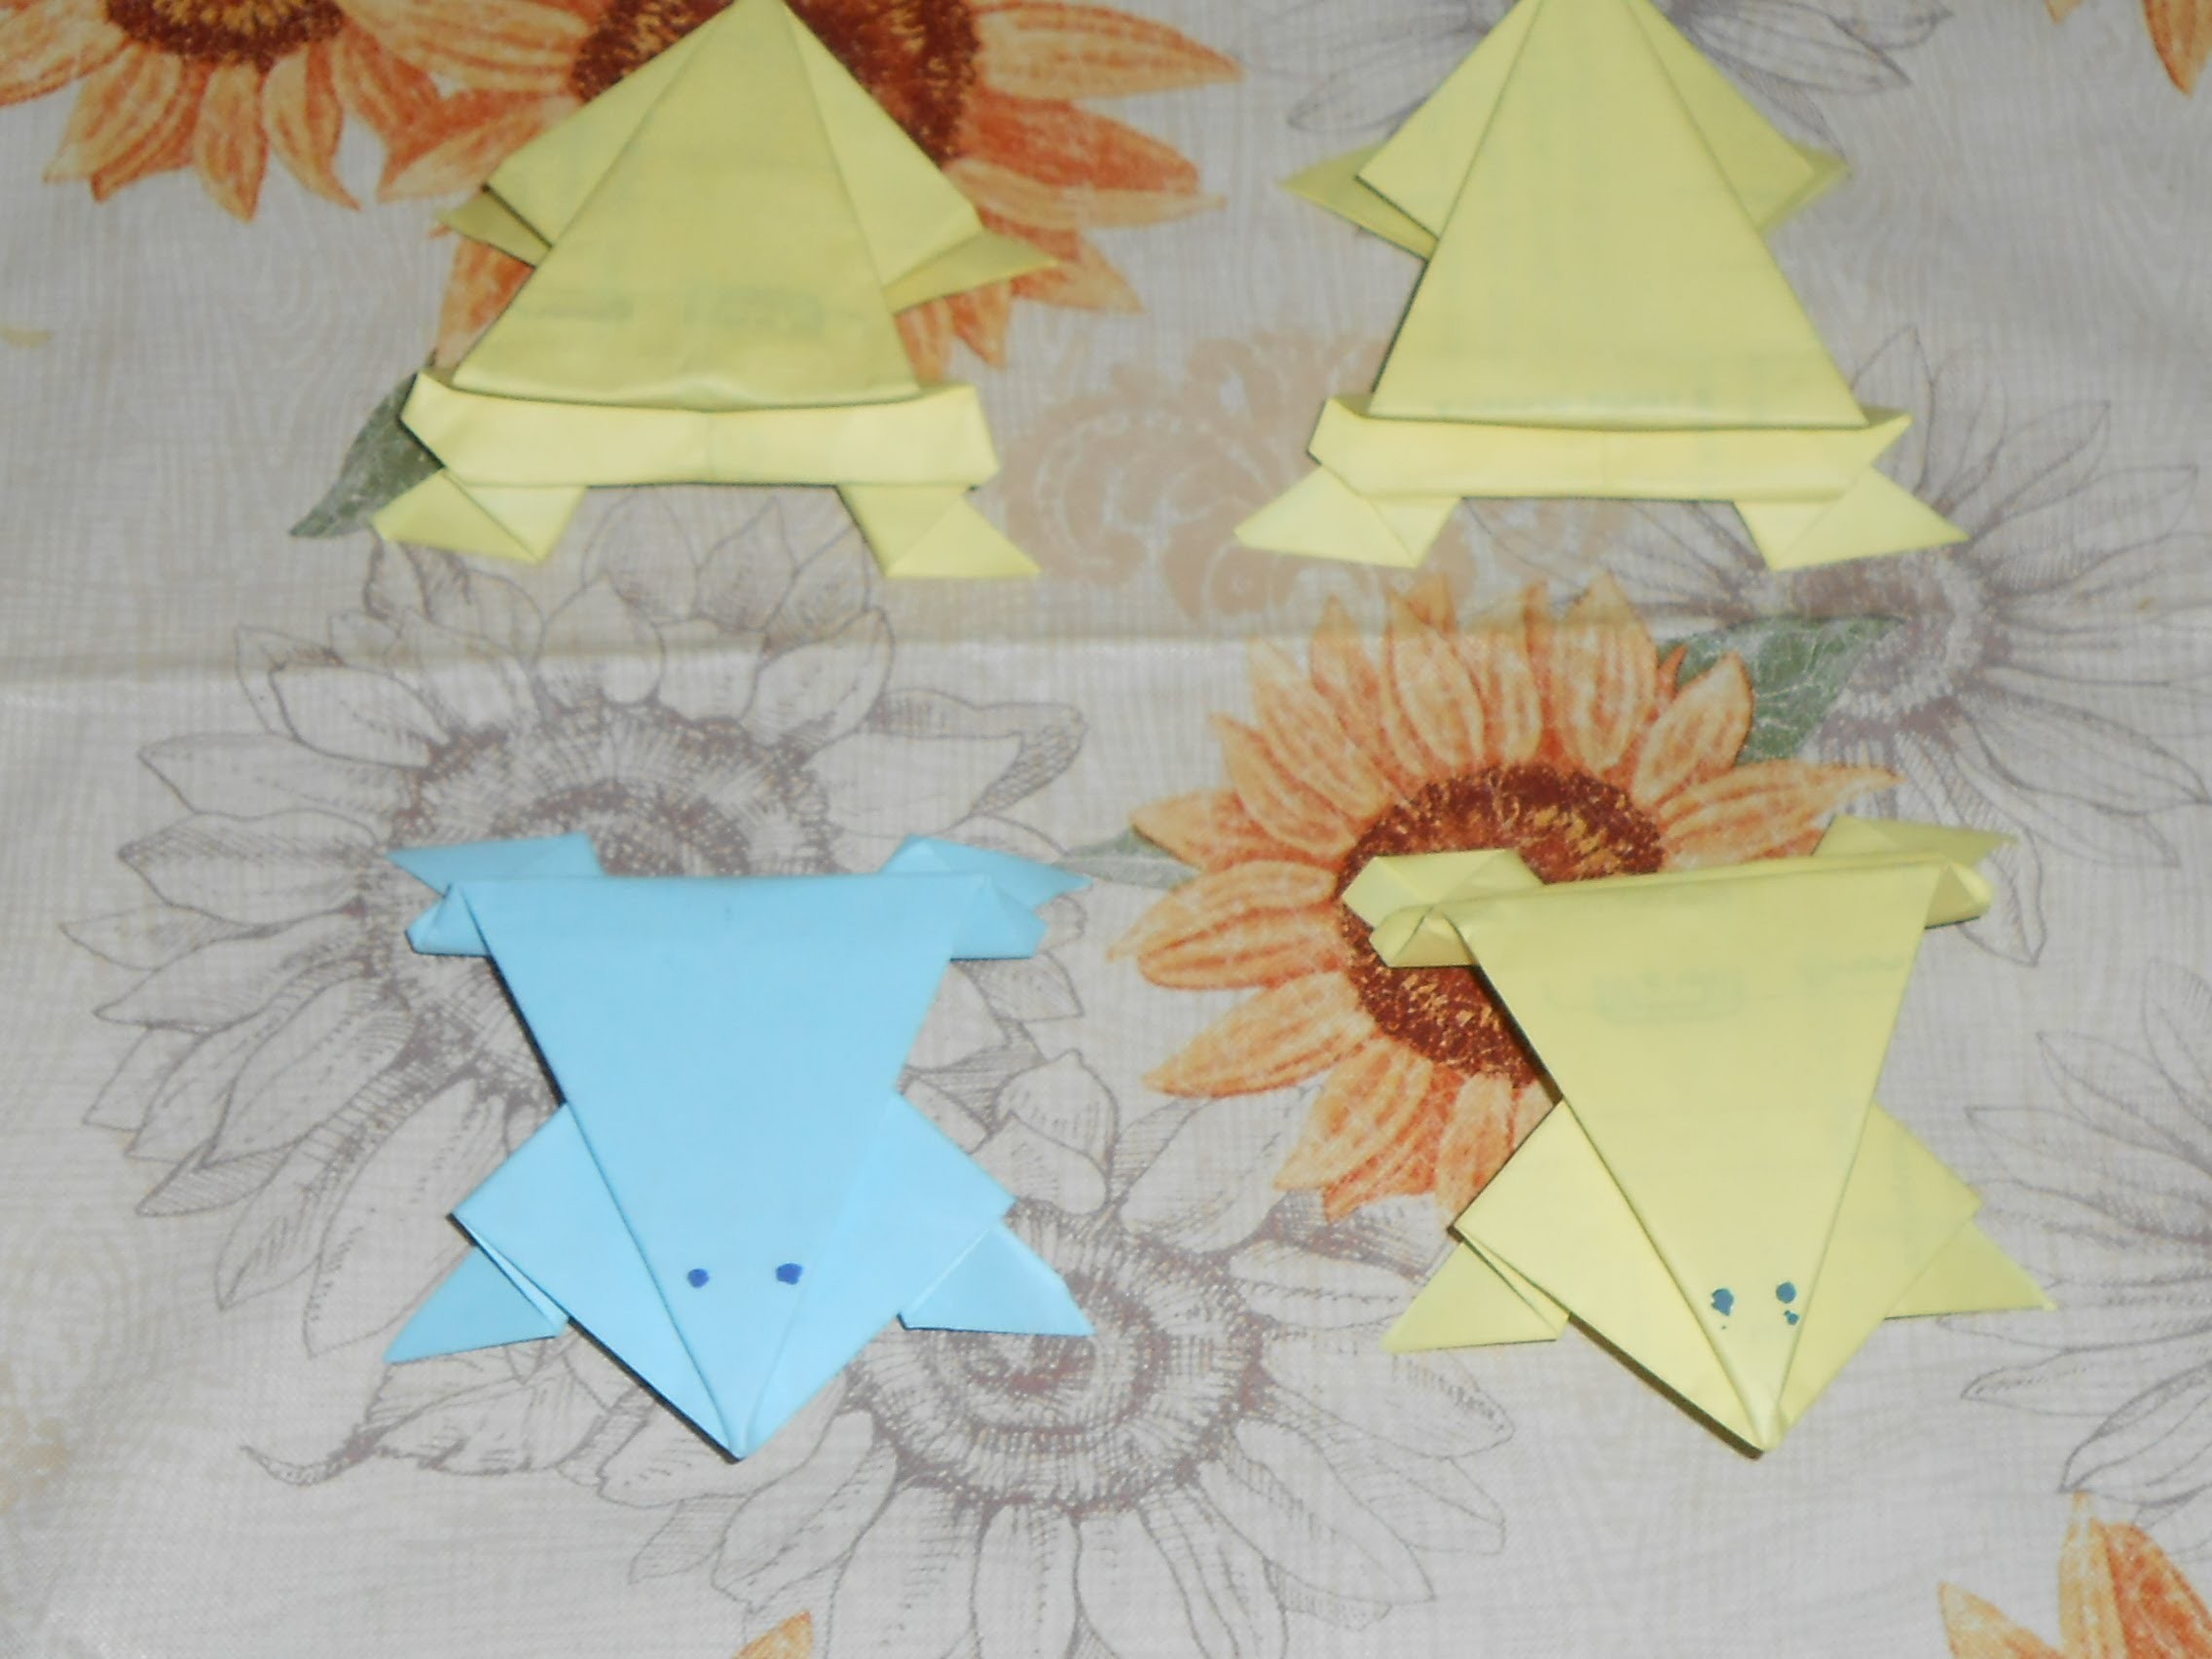 Rana de papel origami facil de hacer solo viendo